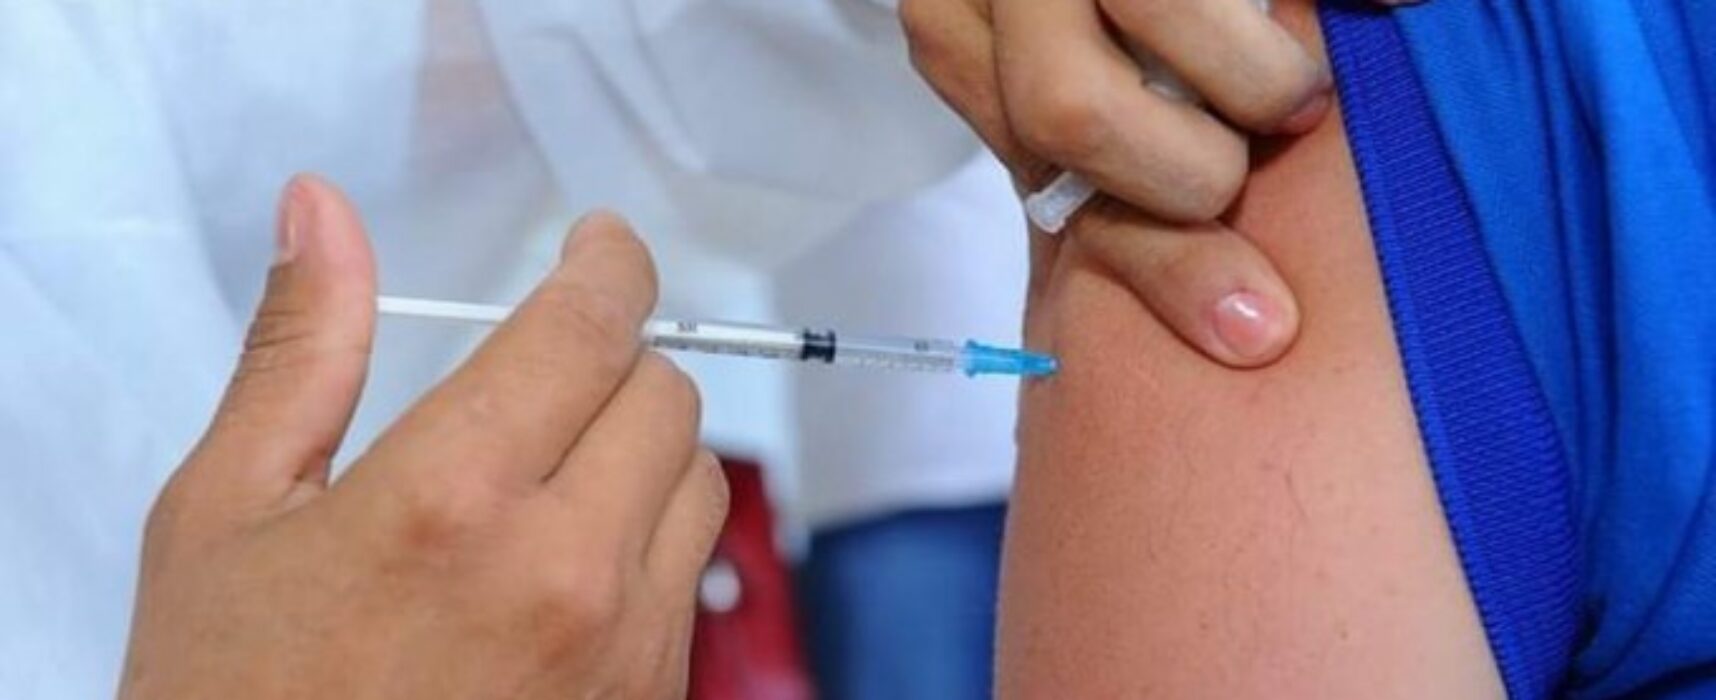 Covid-19: Cronograma de vacinação está mantido nesta quarta em Ilhéus